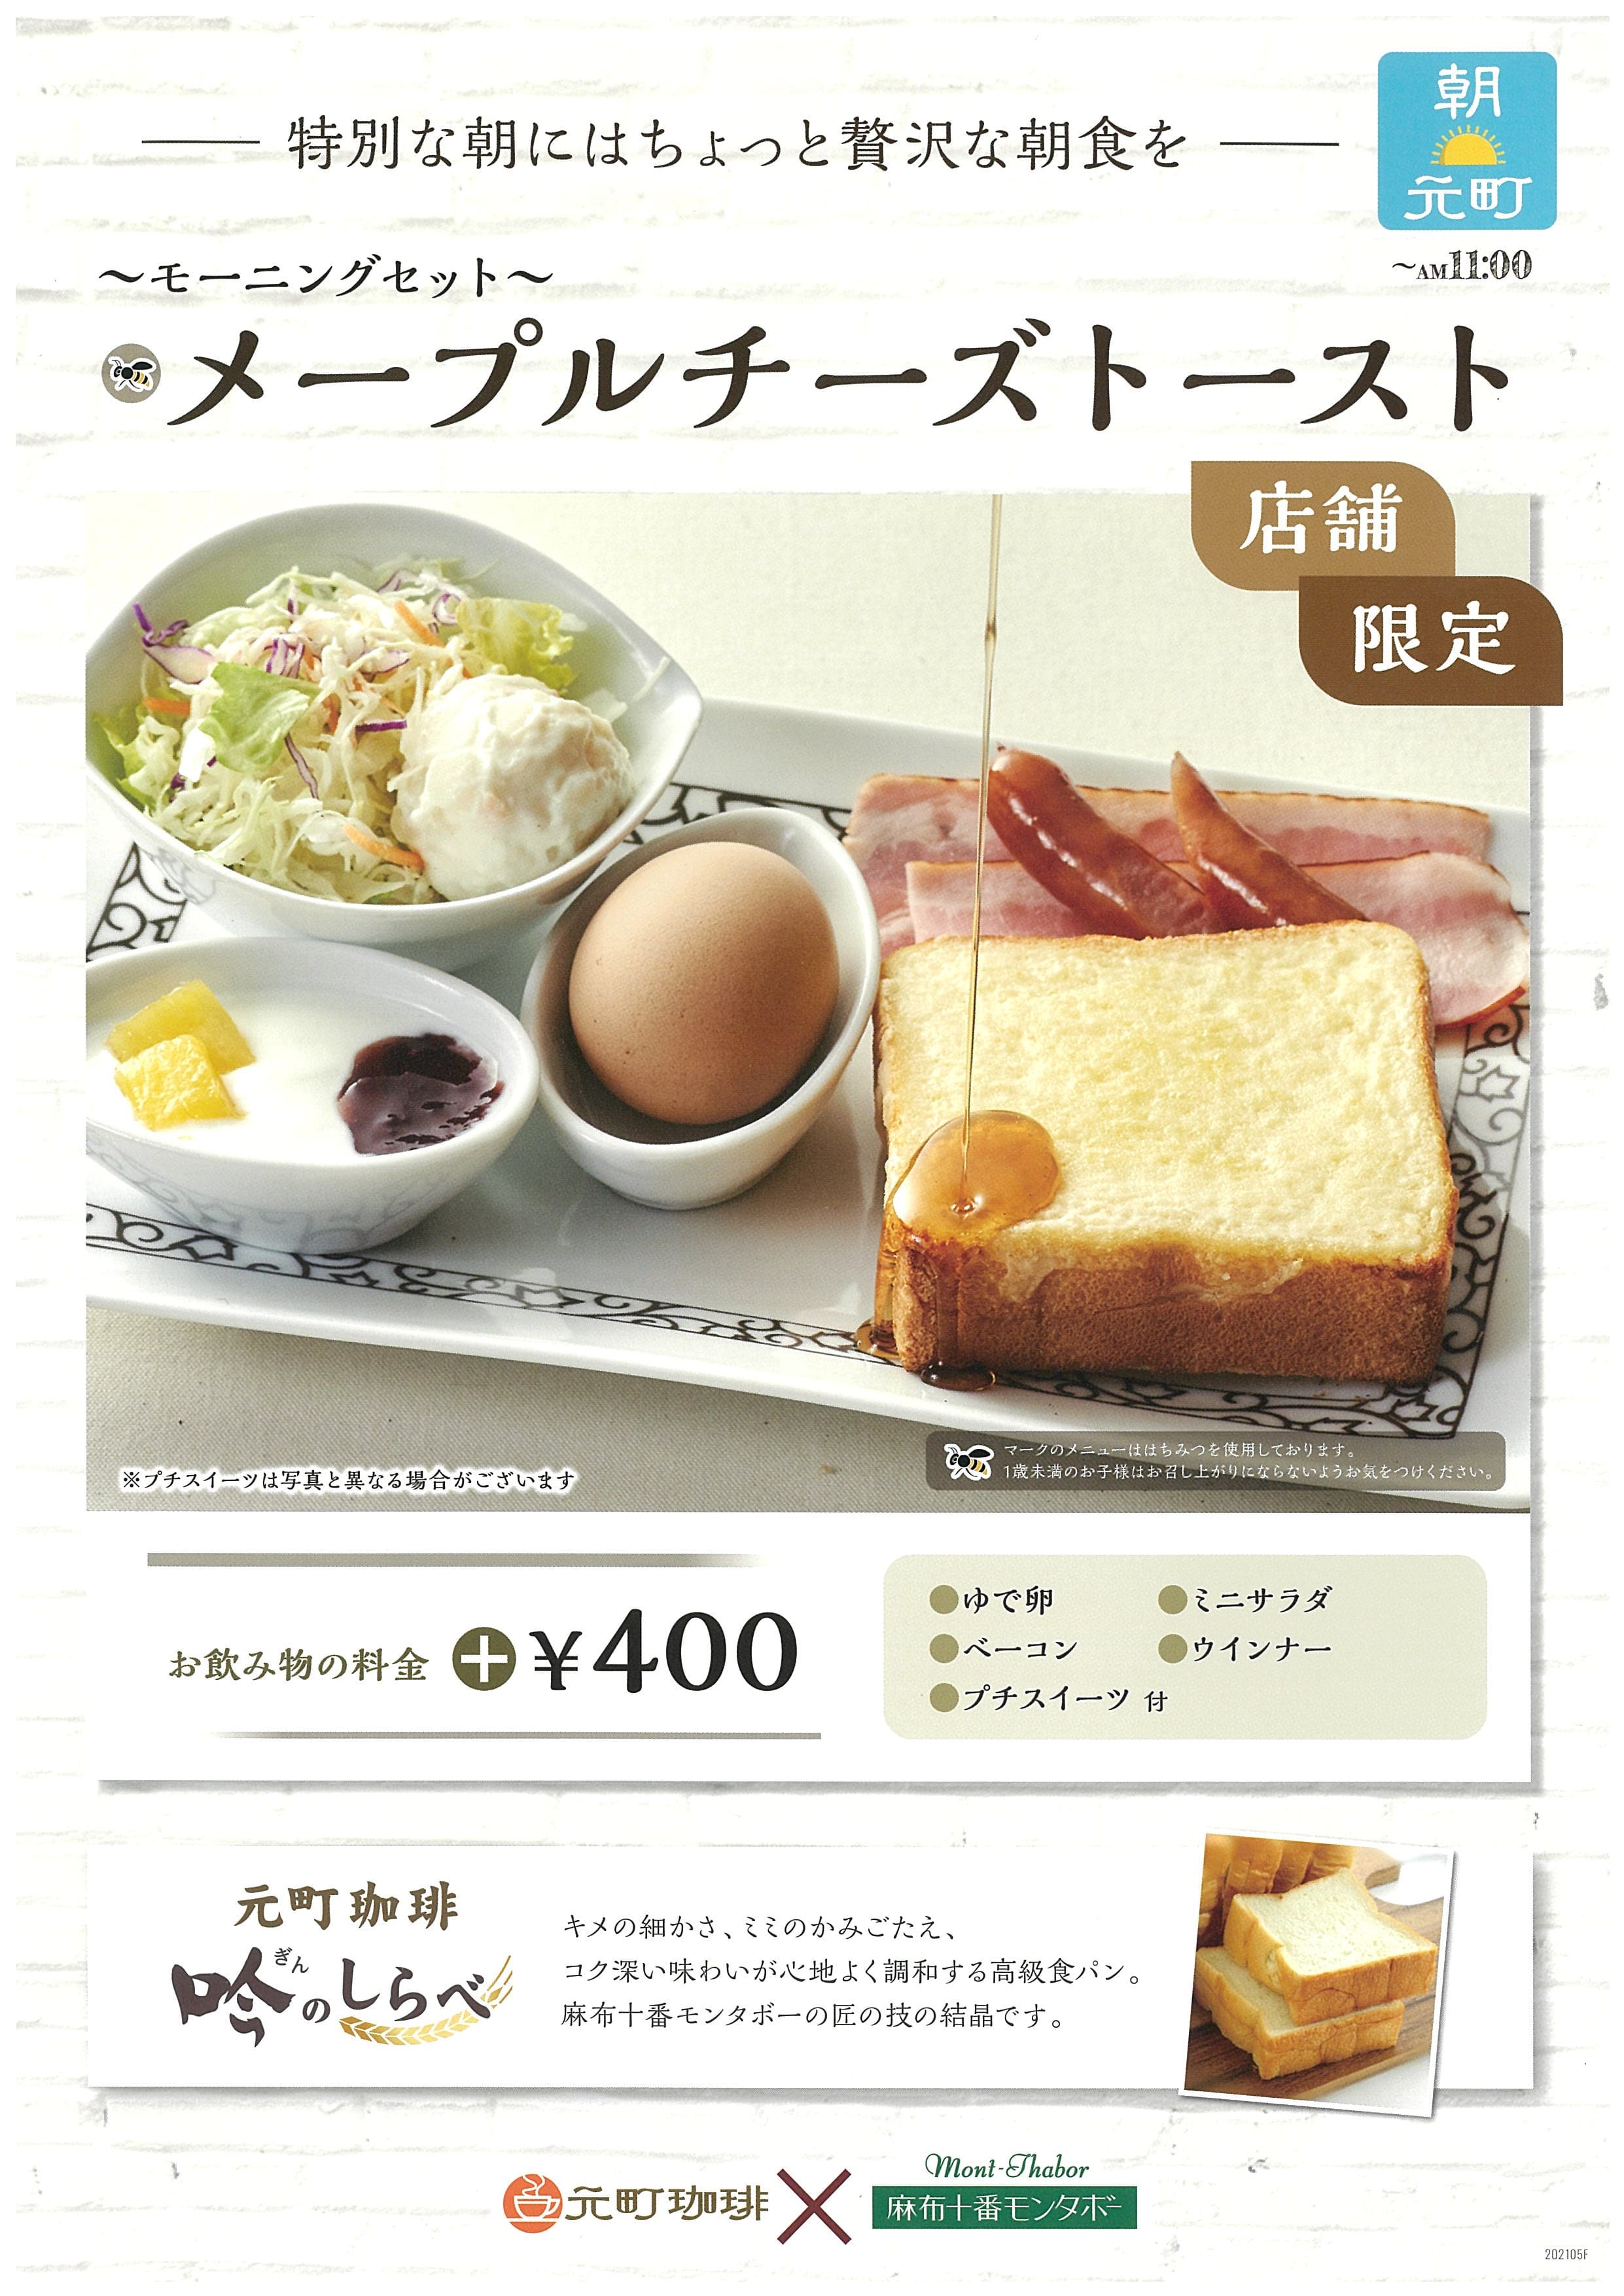 東新潟の離れ限定のモーニングセット！メープルチーズトーストで特別な朝にちょっと贅沢な朝食を